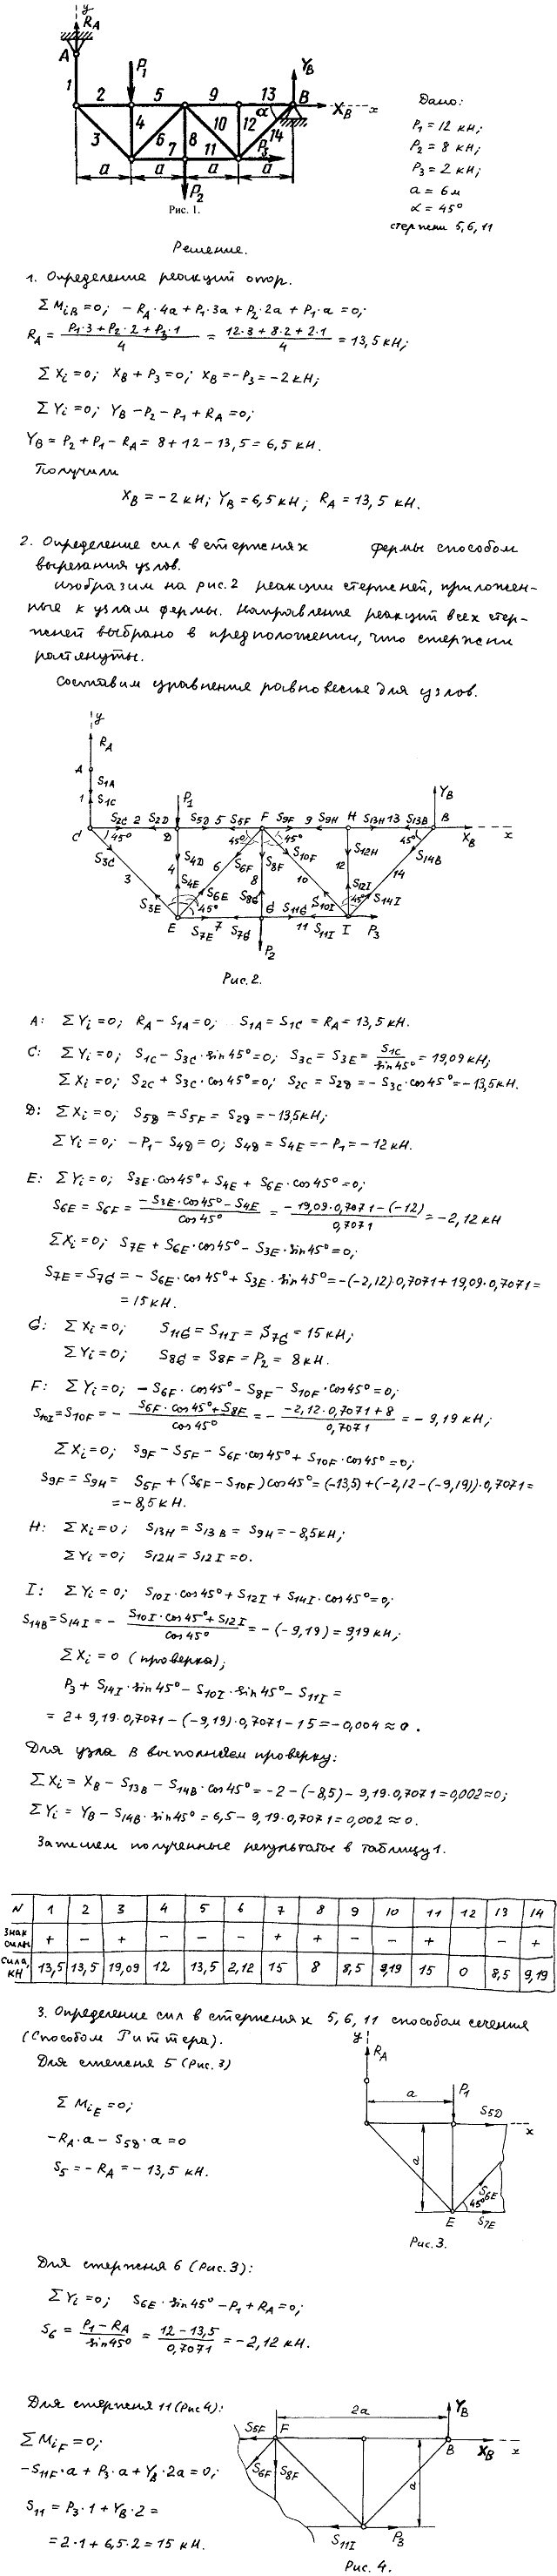 Задание C2 вариант 29. P1=12 кН, P2=8 кН, P3=2 кН, a=6 м, α=45 град, номер стержня 5, 6, 11.